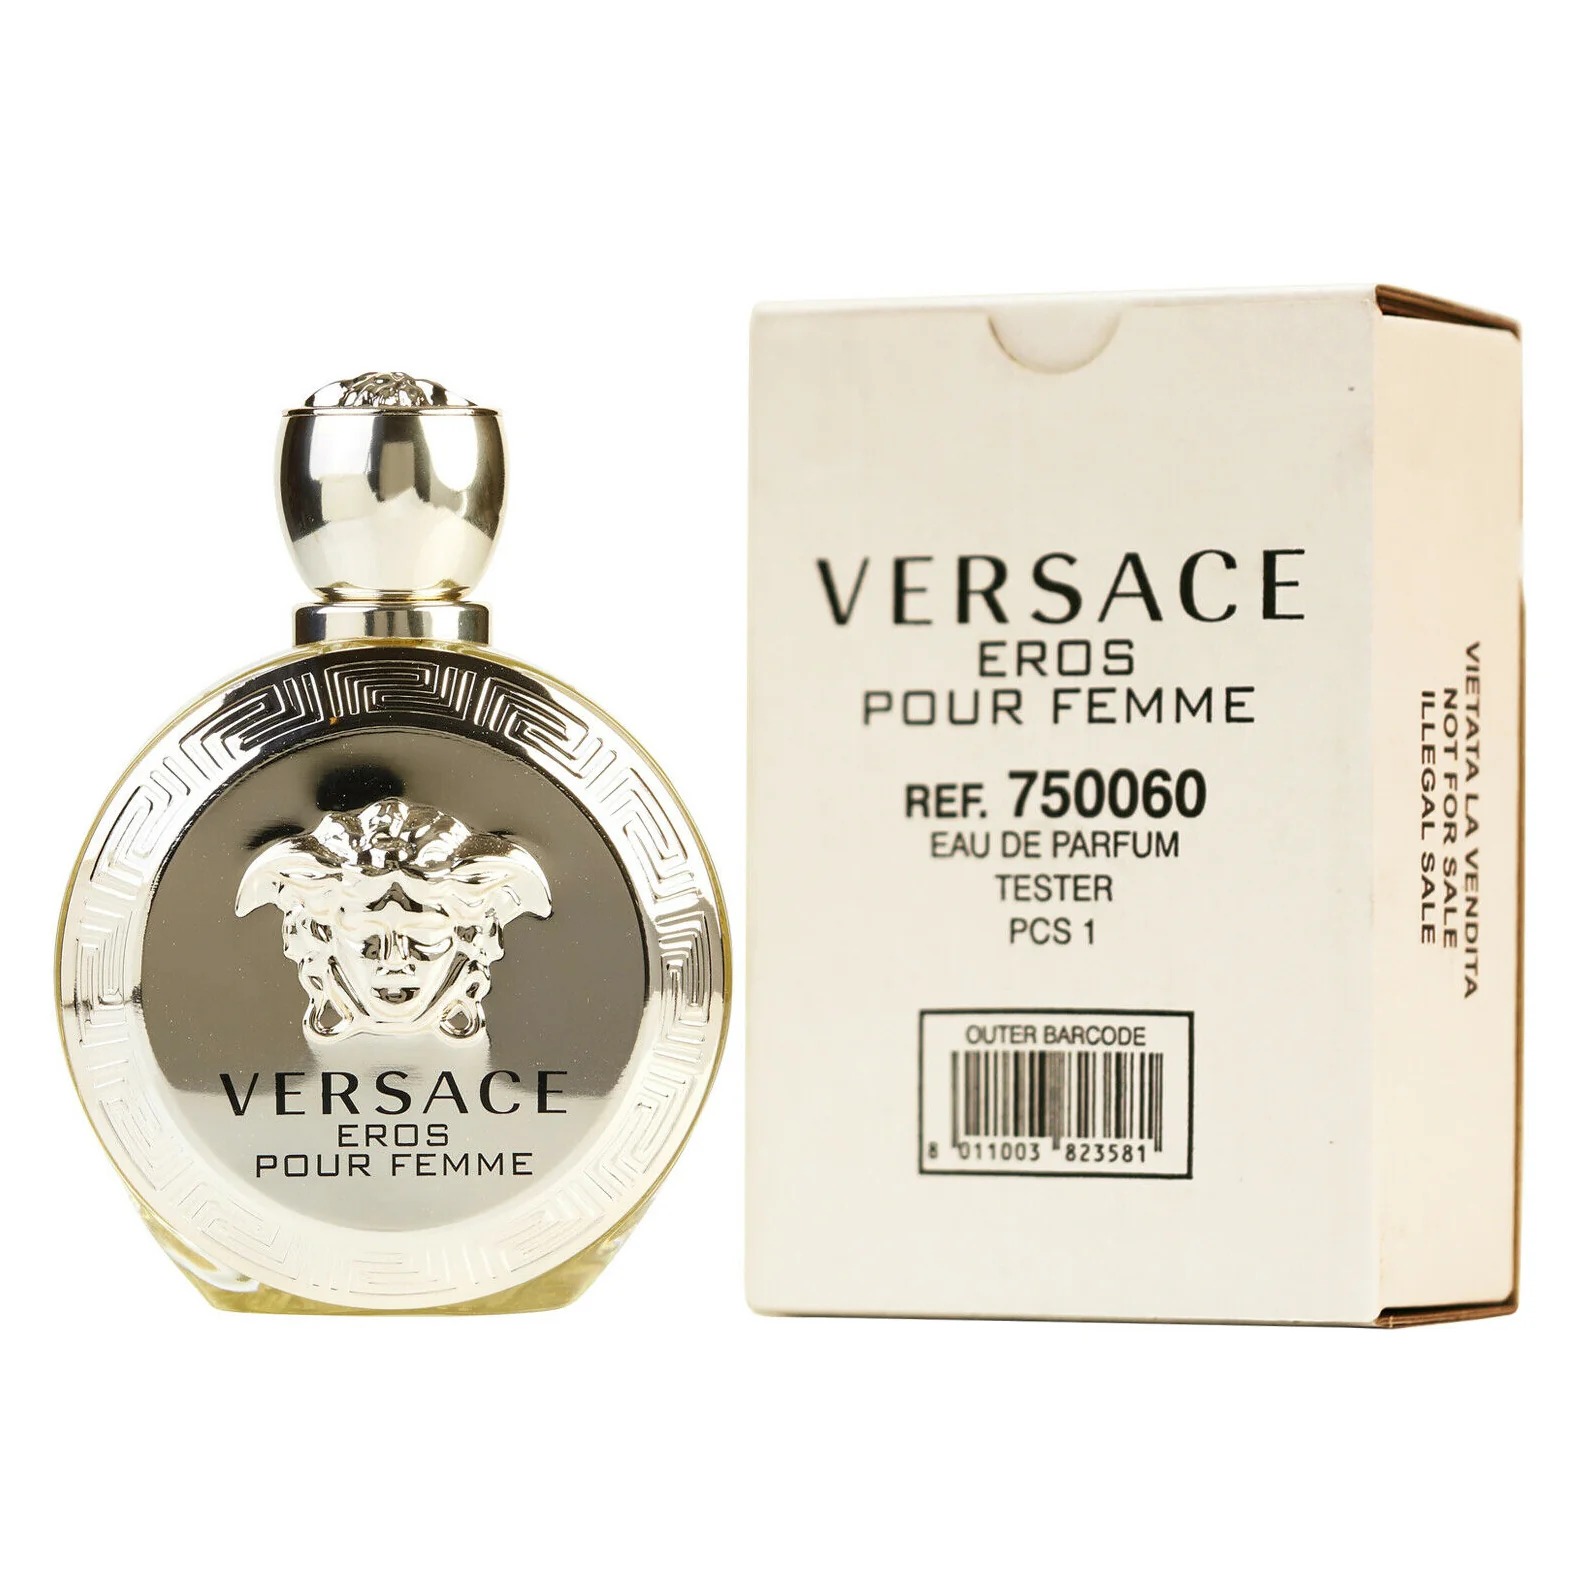 Versace Eros Pour Femme Eau De Parfum 3.4 oz 100 ml TESTER plus free gifts